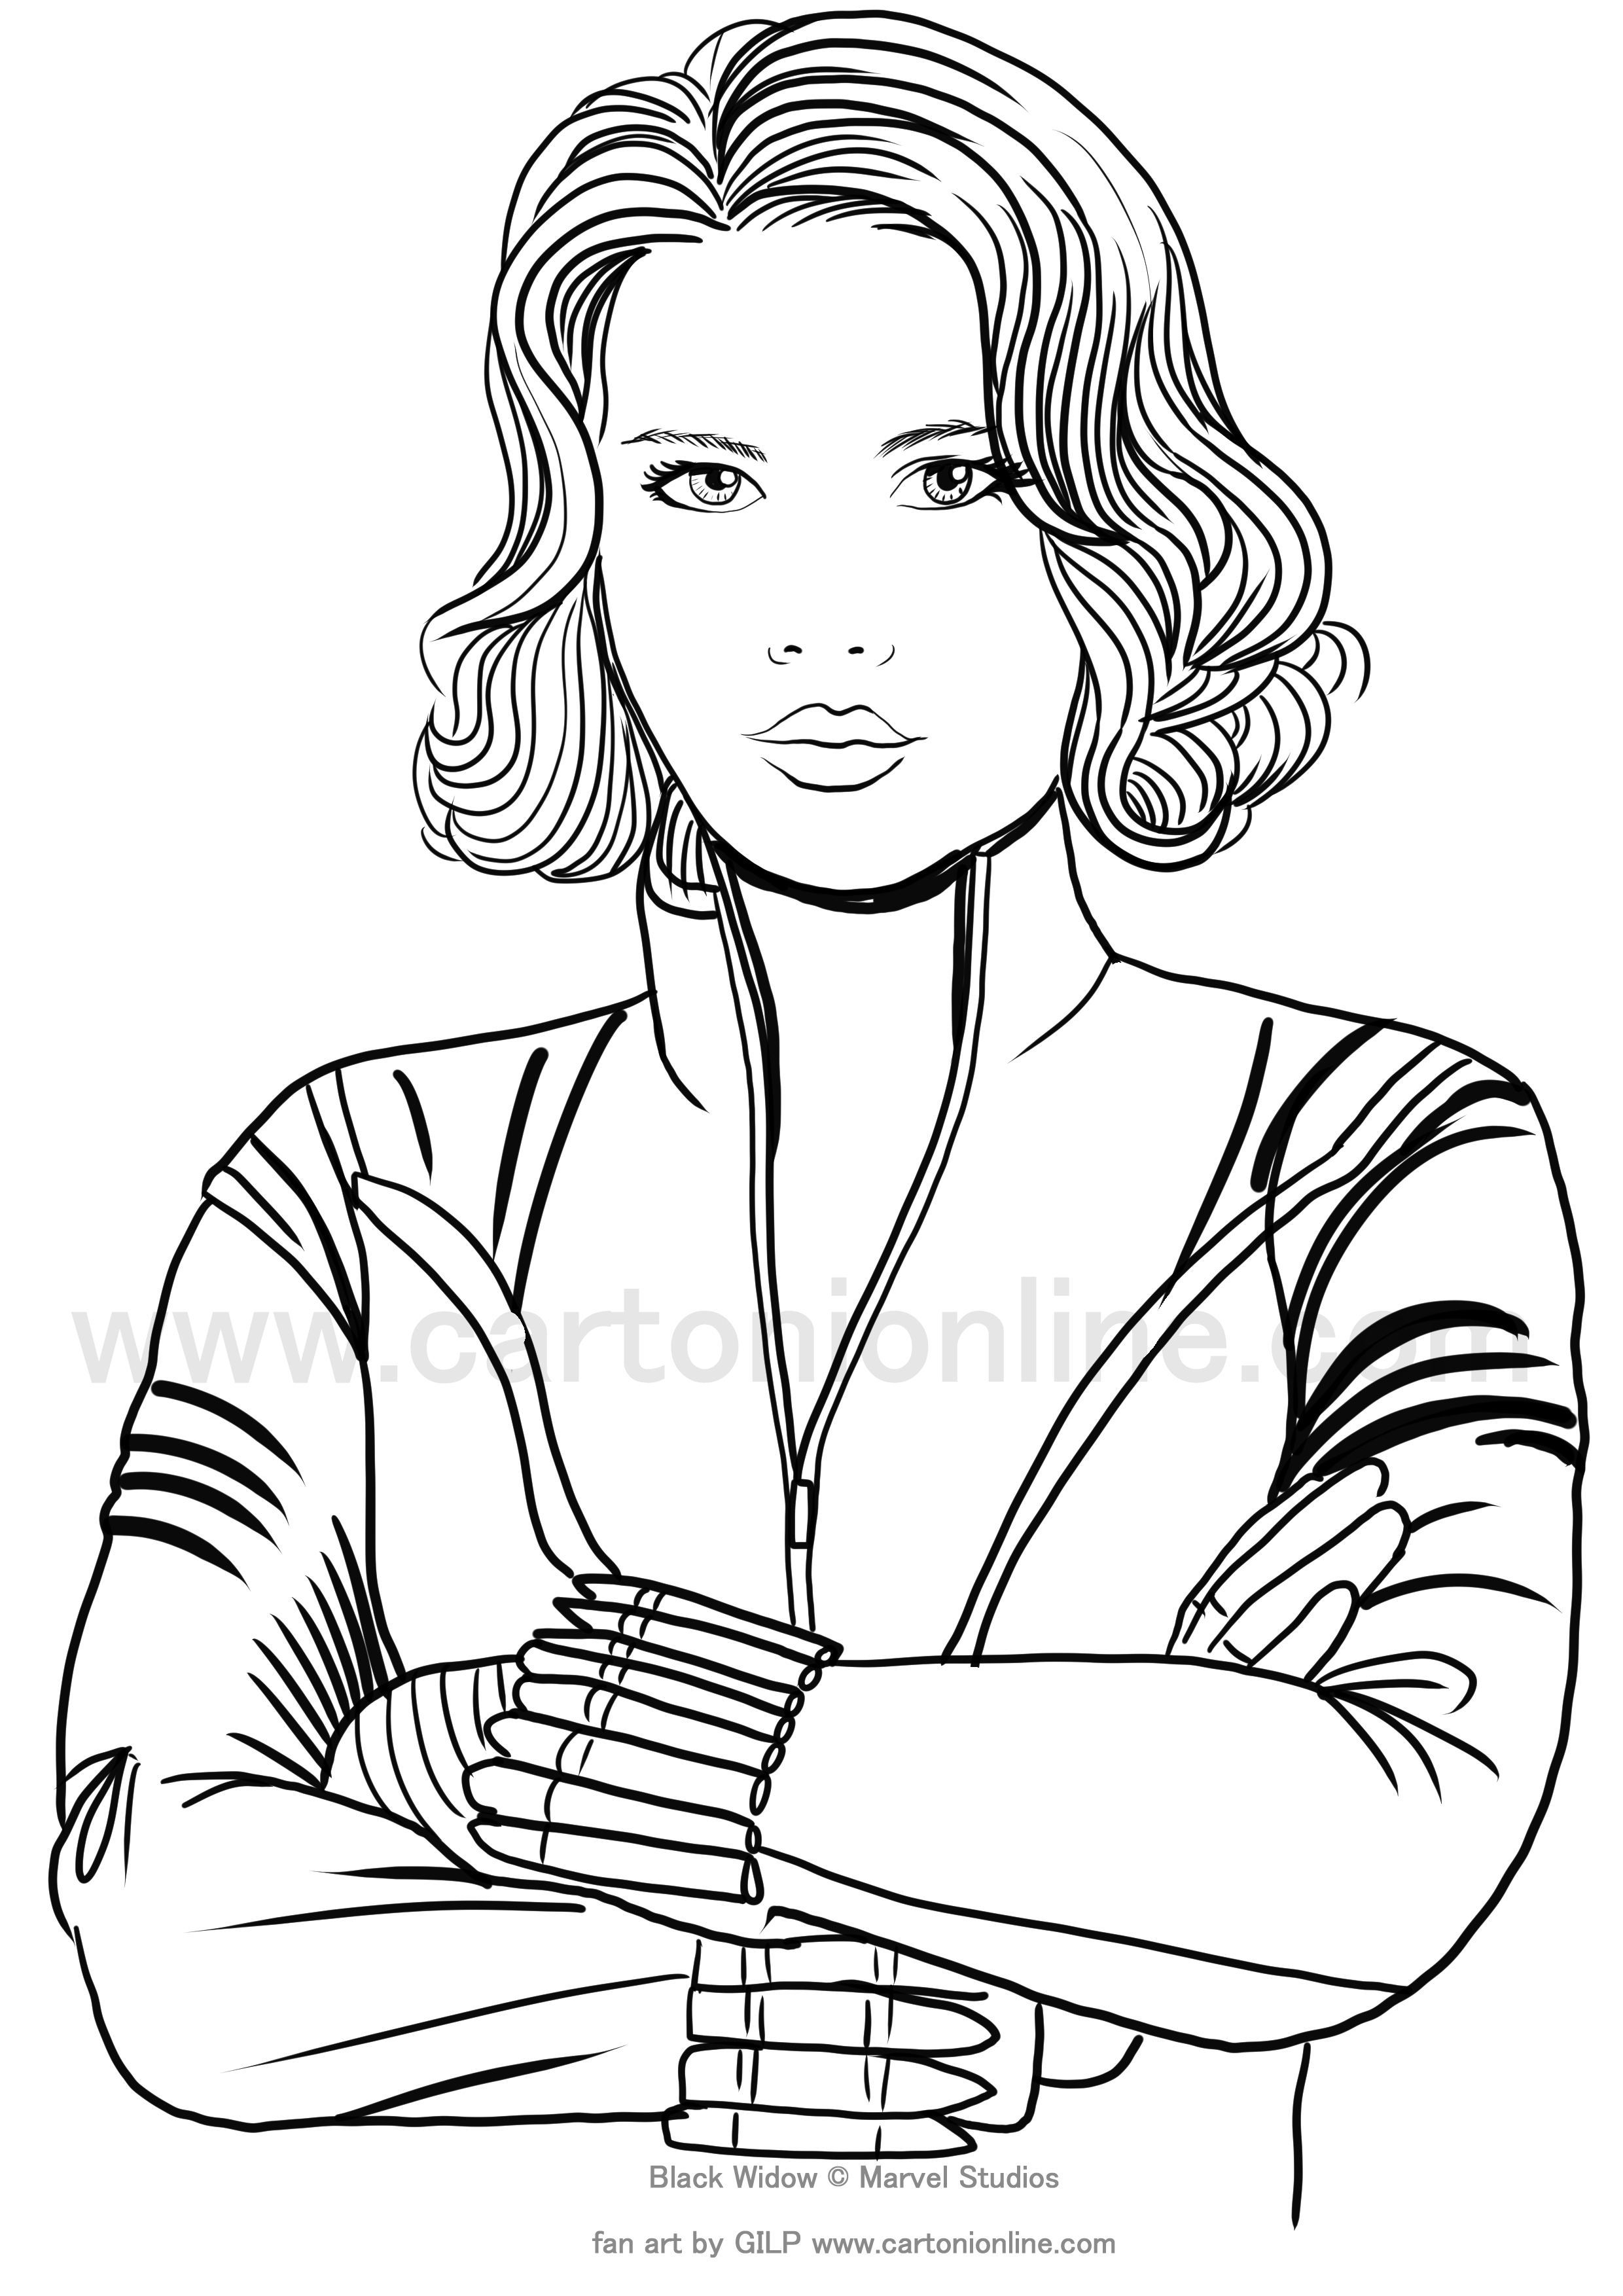 Dibujo de Black Widow (Scarlett Johansson) 03 de Black Widow (película) para imprimir y colorear